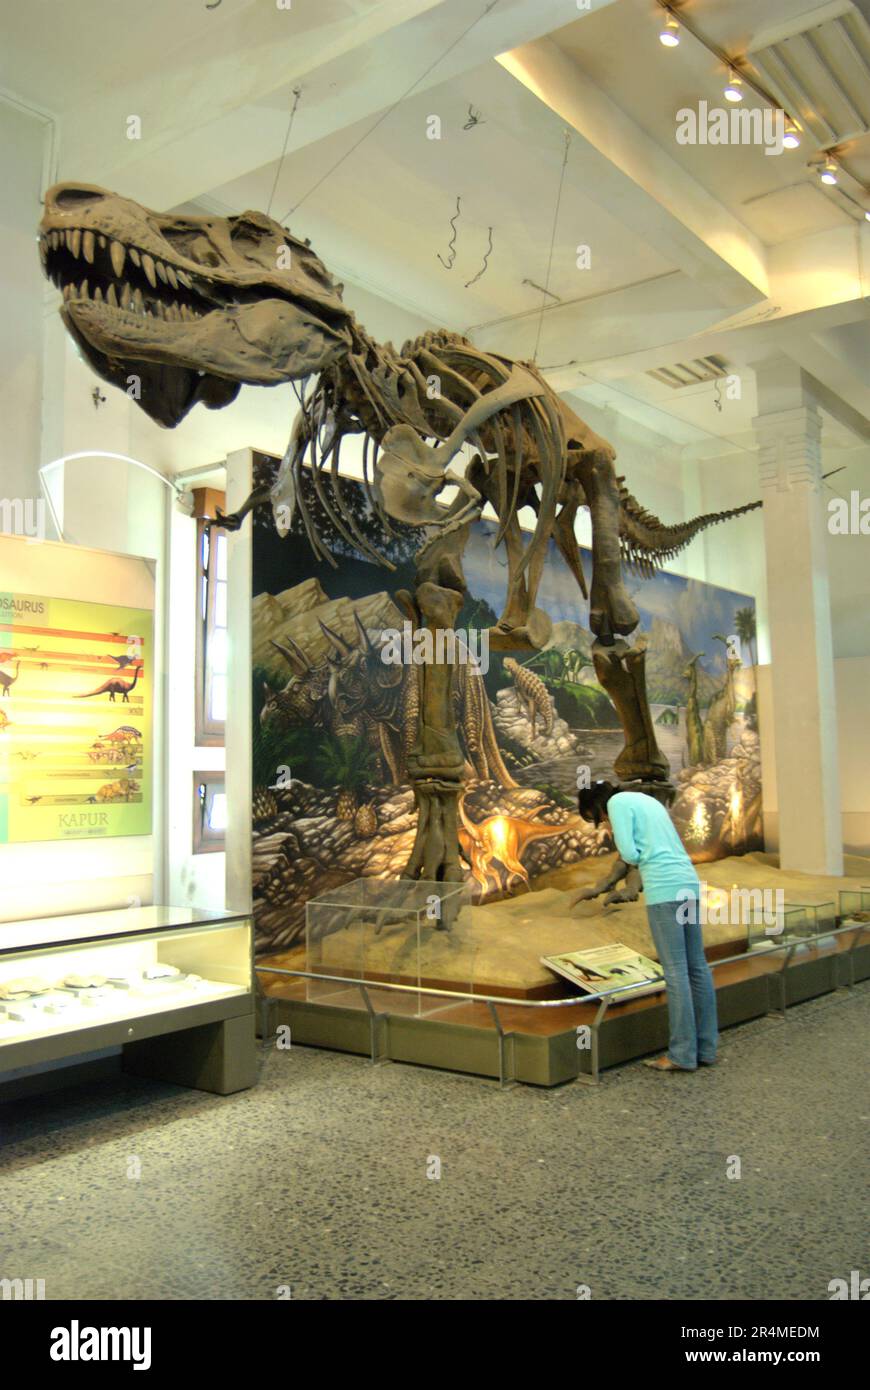 Una donna visitatrice sta leggendo le informazioni sotto una ricostruzione di un Tyrannosaurus rex al Museo Geologi (Museo di Geologia) a Bandung, Giava Occidentale, Indonesia. Foto Stock